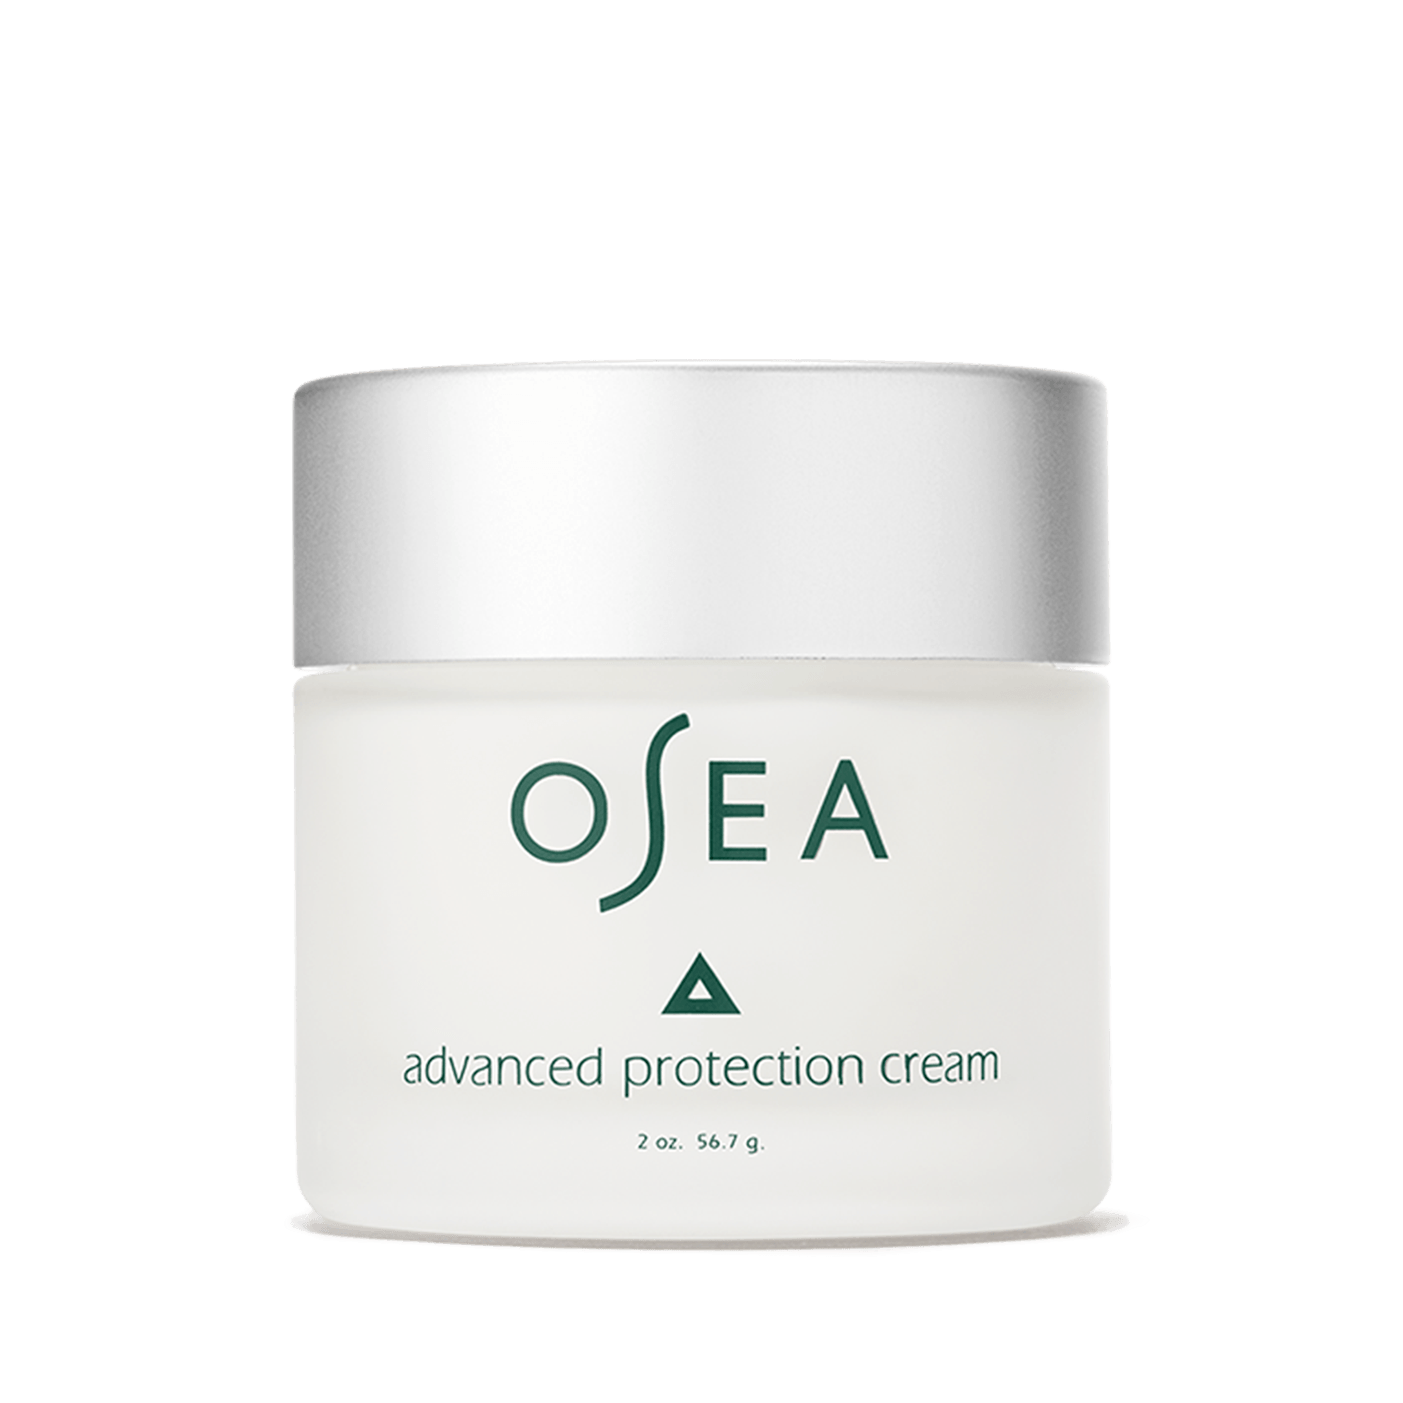 Osea - Advanced Protection Cream